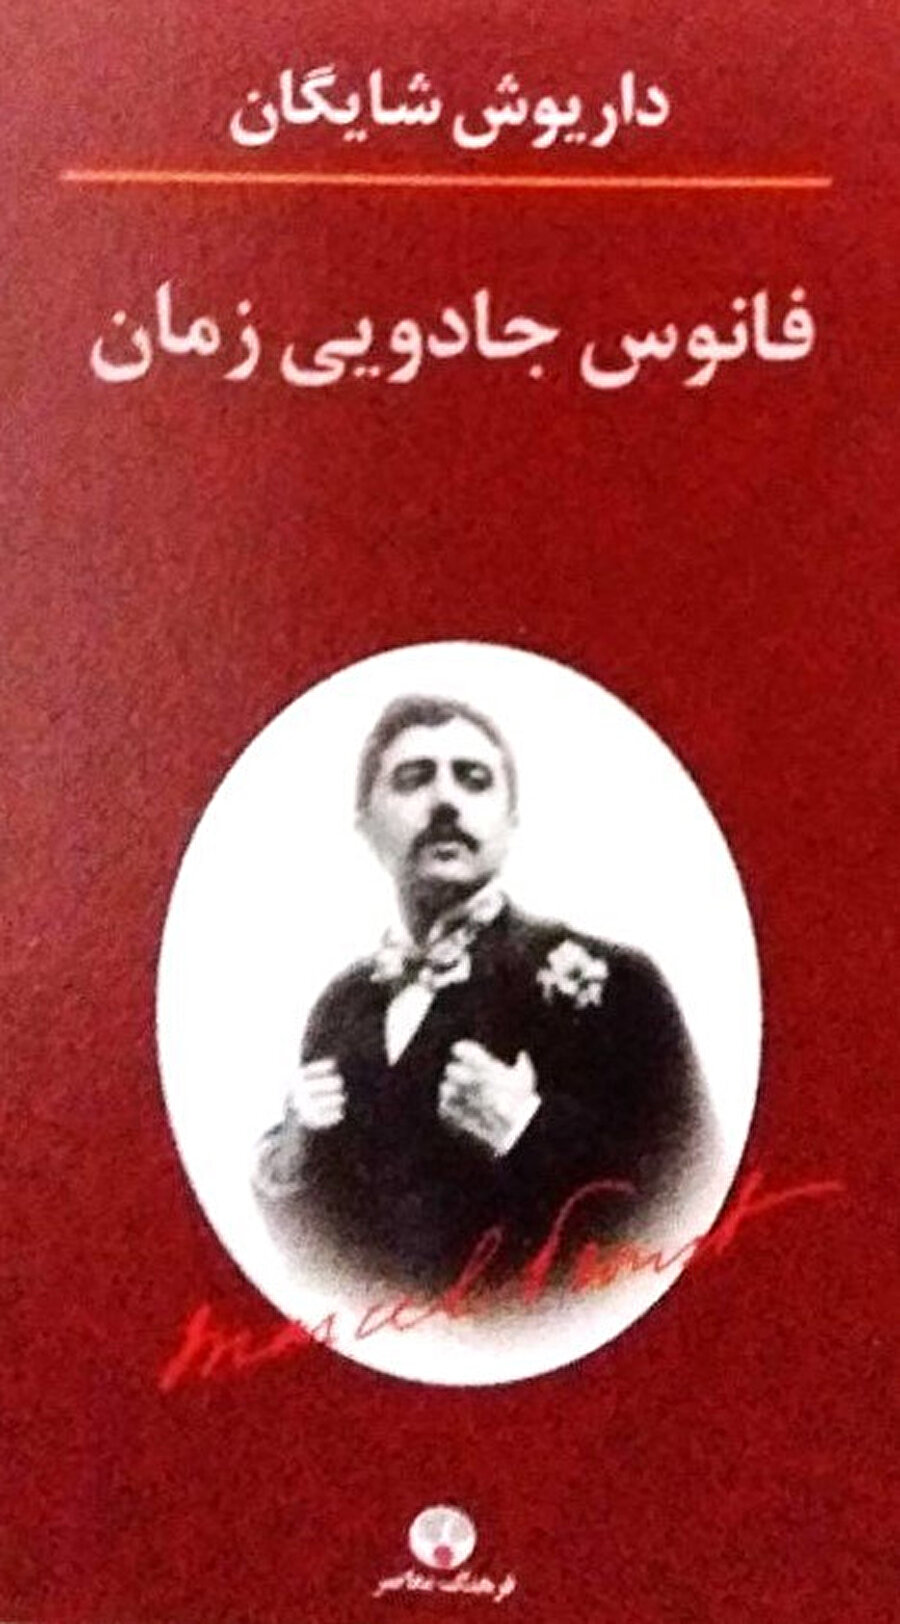 Şayegan’ın son kitabı “Zamanın Büyülü Fanusunda”nın kapağı. Yazar şimdi komada. Umarız bu son söy-leşisi olmaz. 